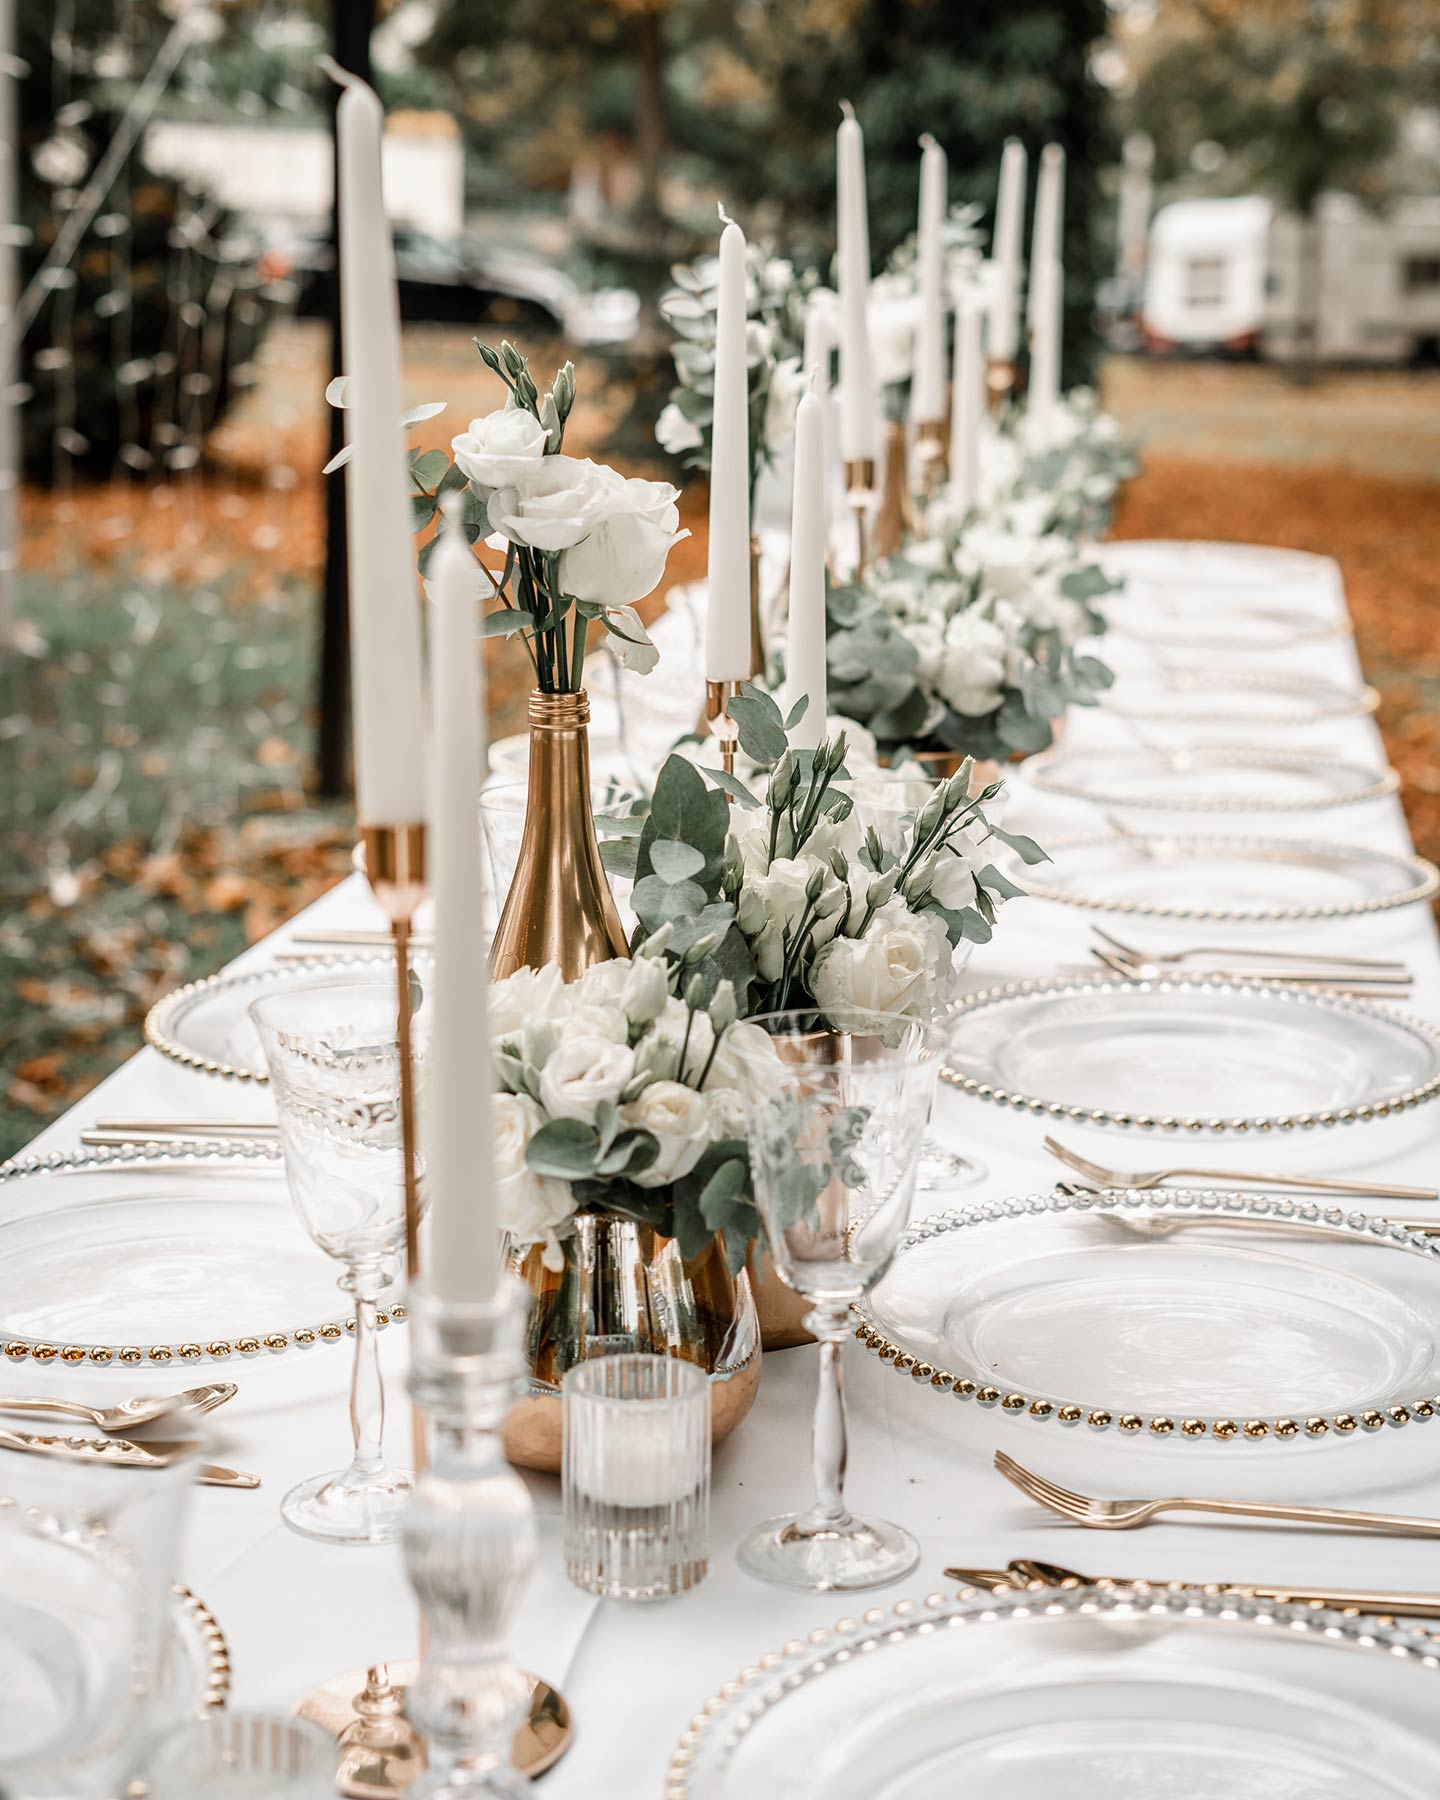  Der gedeckte Hochzeitstisch ist liebevoll angeordnet mit durchsichtigen Tellern mit Goldrand, goldenem Besteck, weißen, großen Kerzen und grün-weißen Blumengestecken.